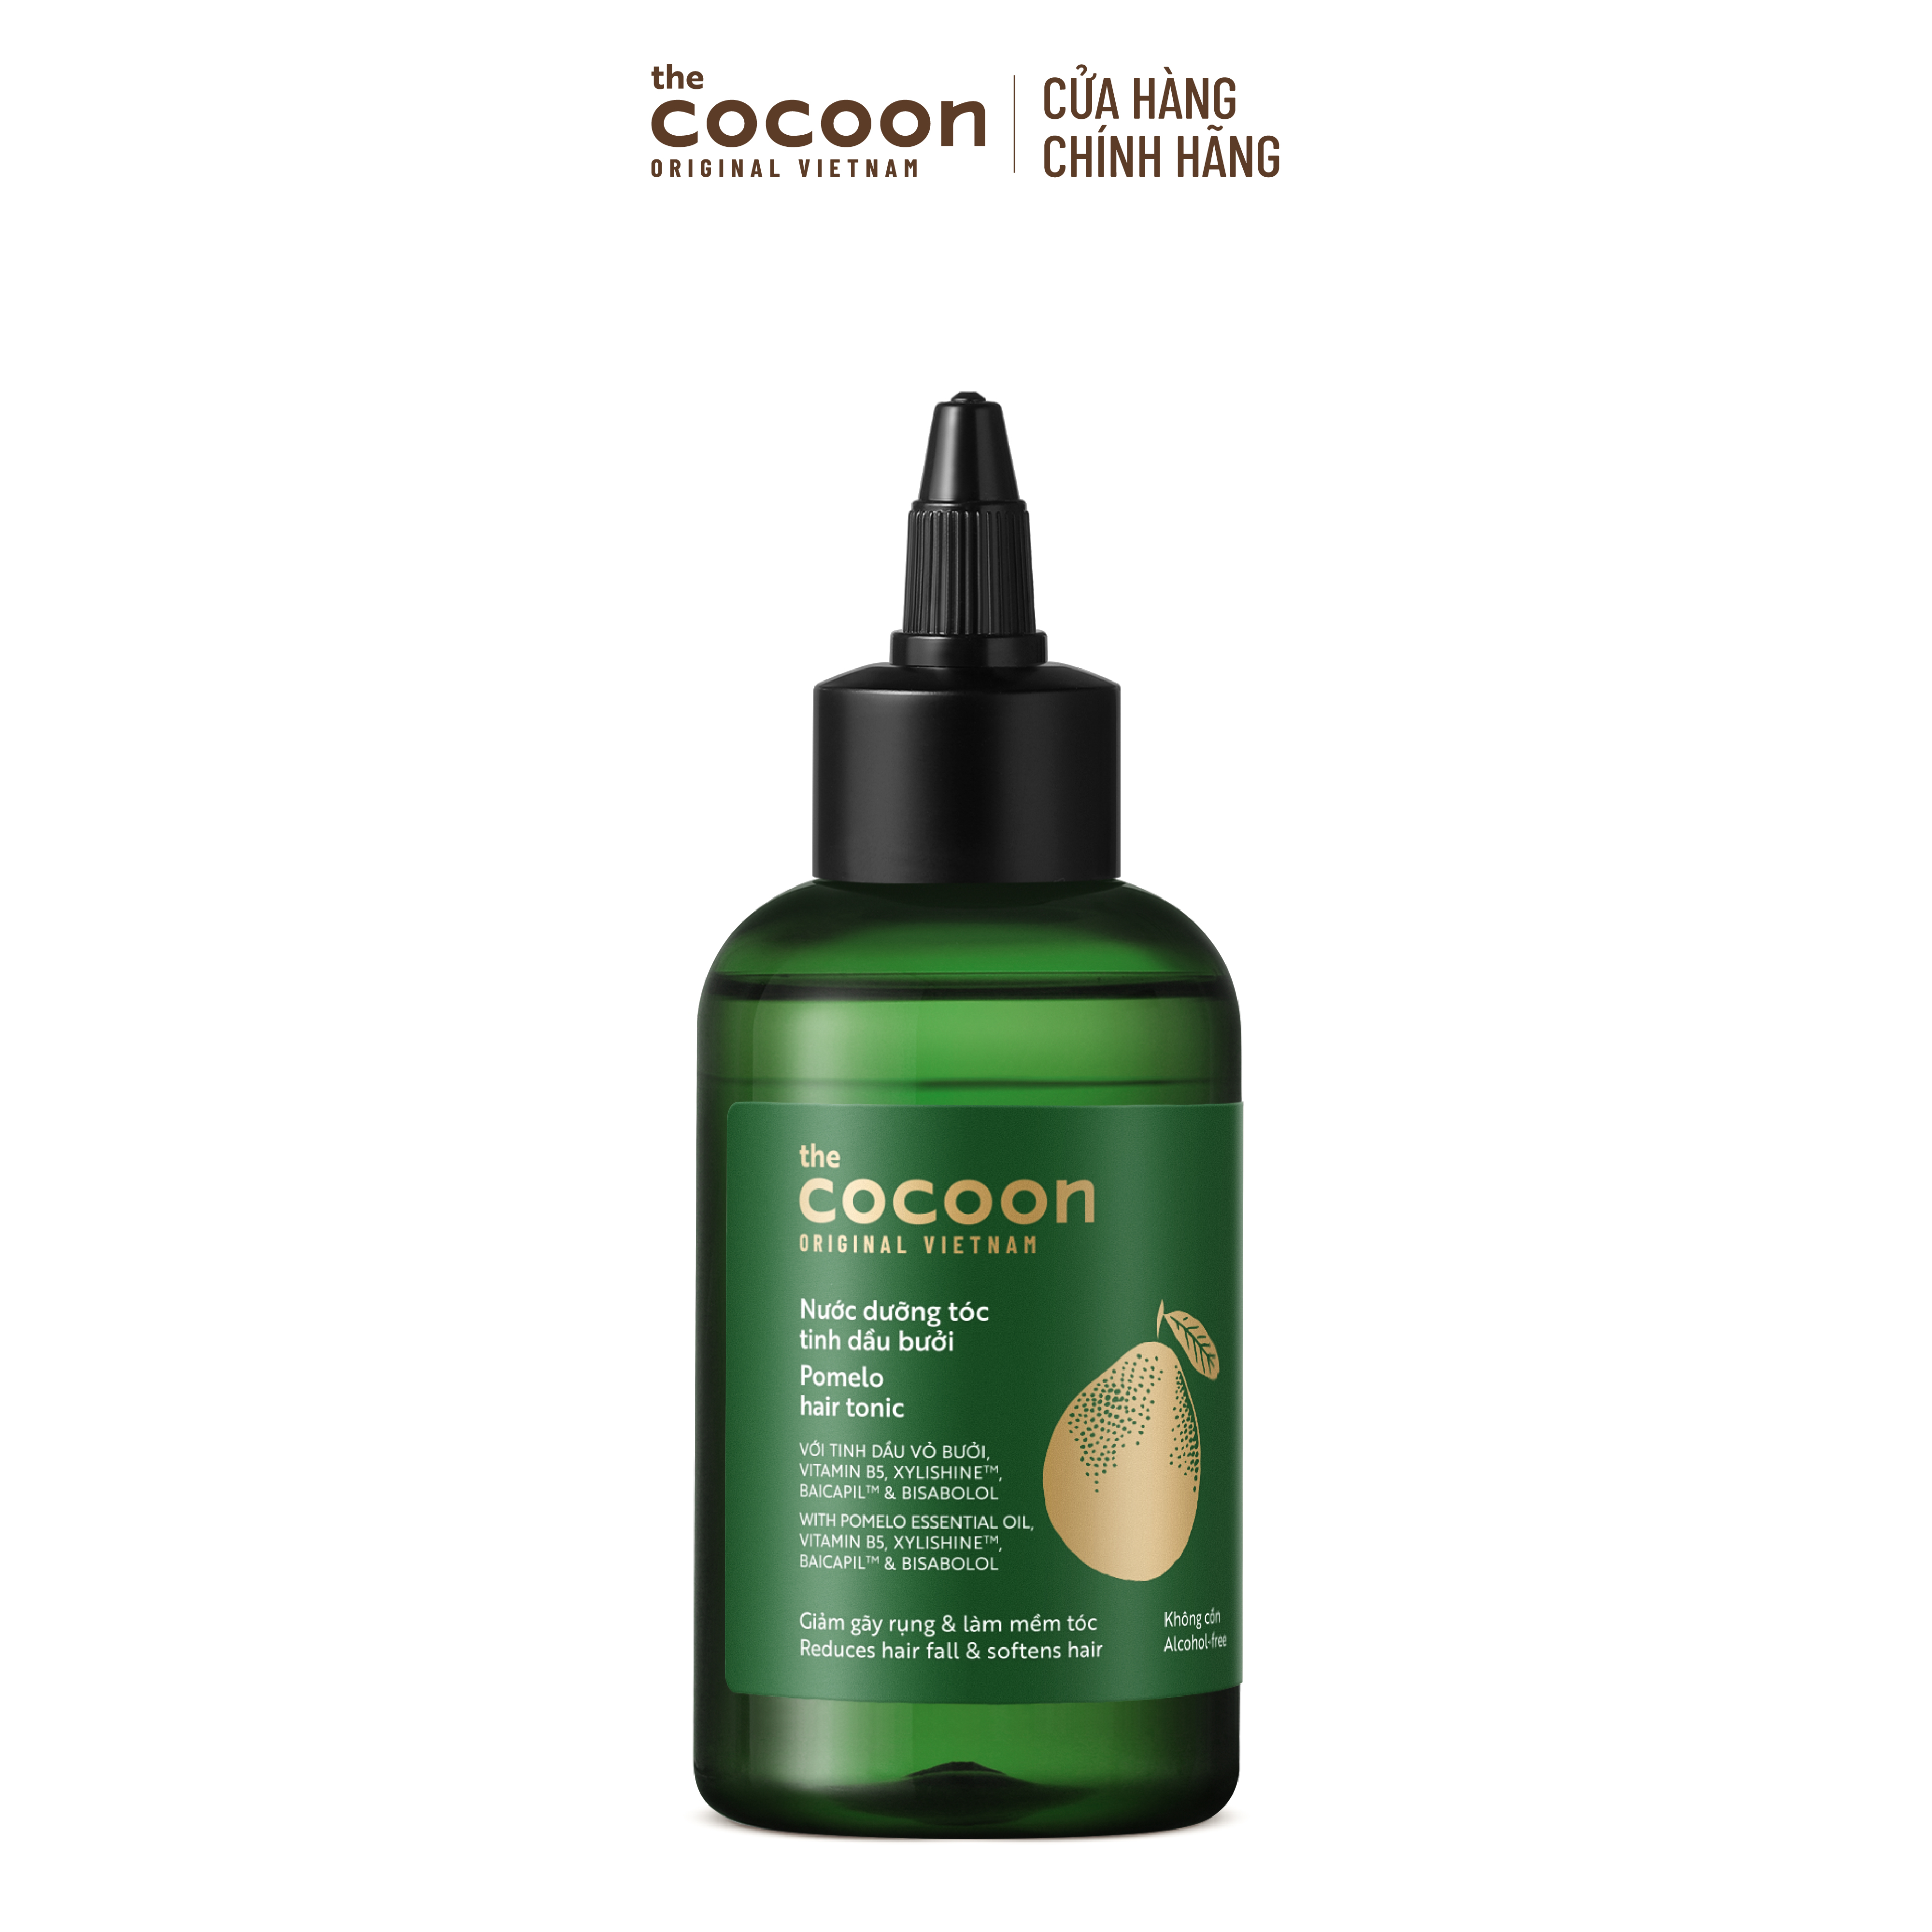 SPECIAL COMBO gội bưởi + nước dưỡng tóc tinh dầu bưởi tặng Kem ủ tóc bưởi Cocoon giảm gãy rụng và làm mềm tóc 200ml